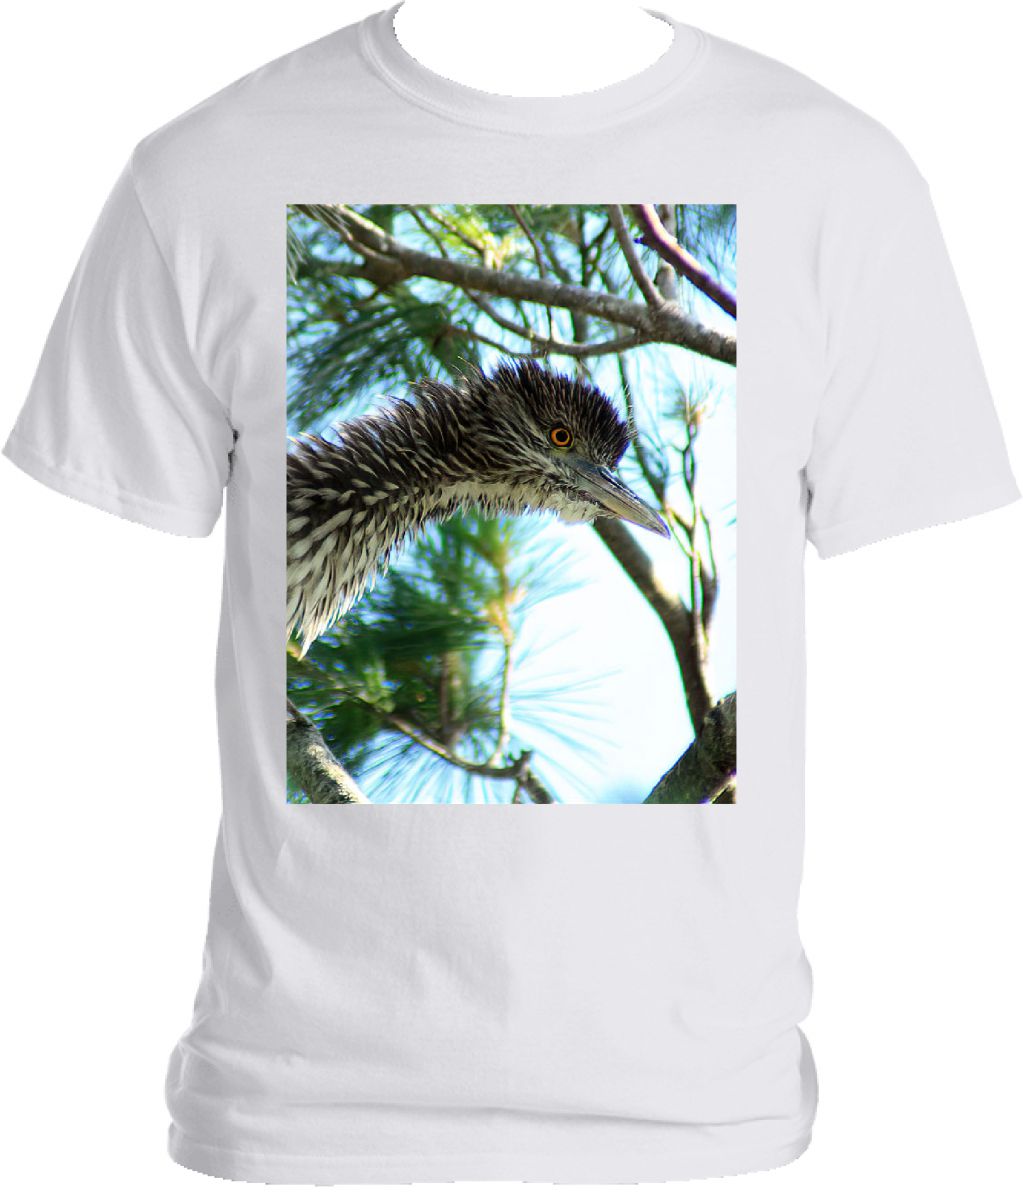 Juvenile Night Heron T-shirt